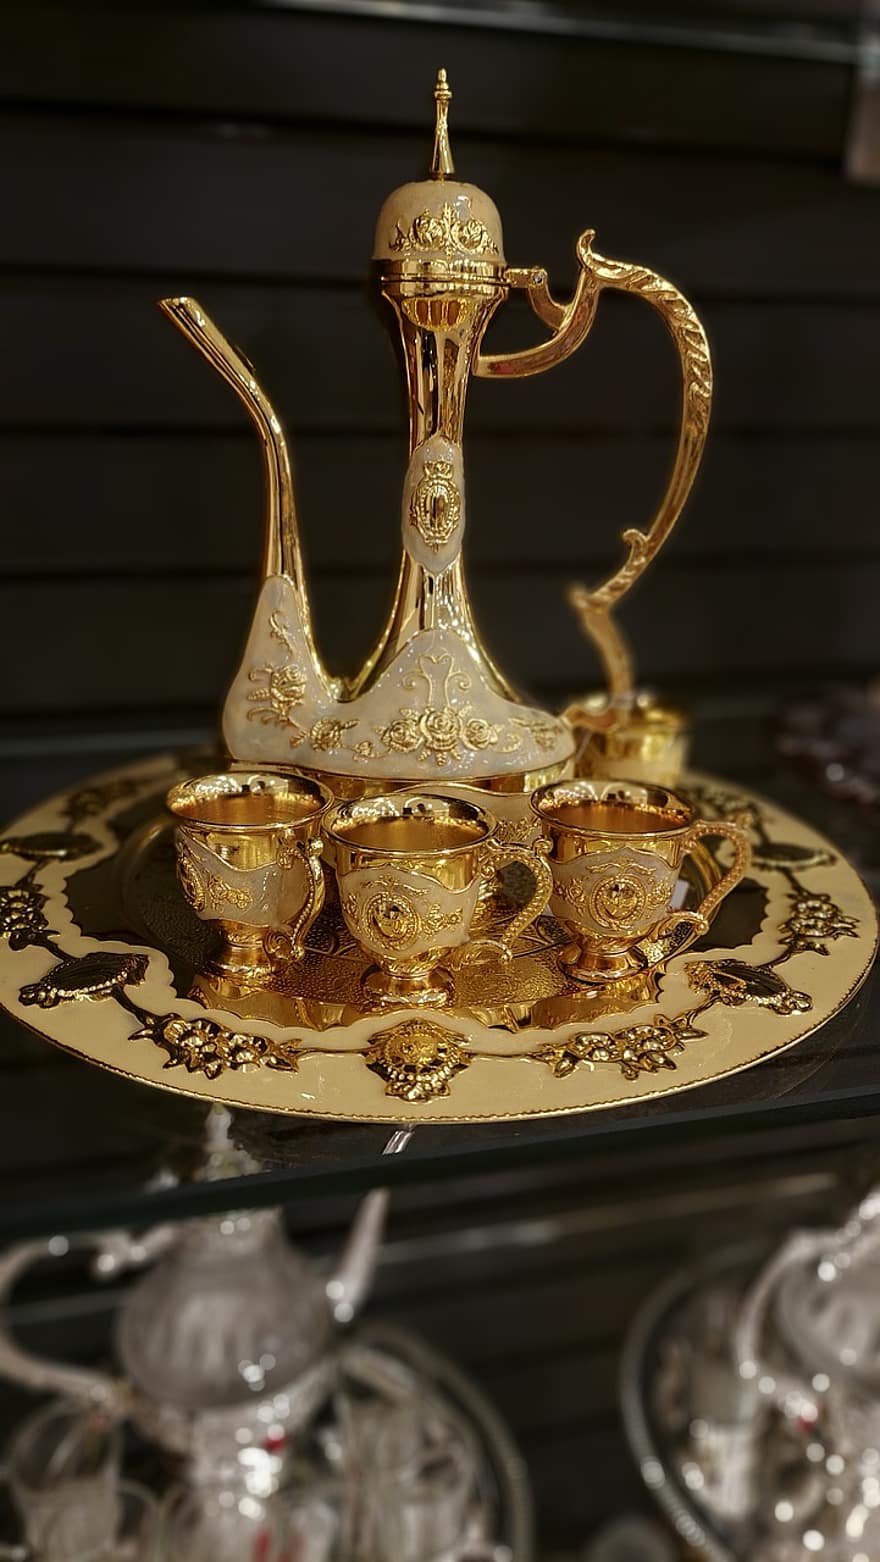 กาน้ำชาทองคำ, ชุดชา, ชุดน้ำชาหรูหรา, วัฒนธรรม, เครื่องประดับ, ทอง, โบราณ, ใกล้ชิด, มันเงา, โลหะ, ของที่ระลึก